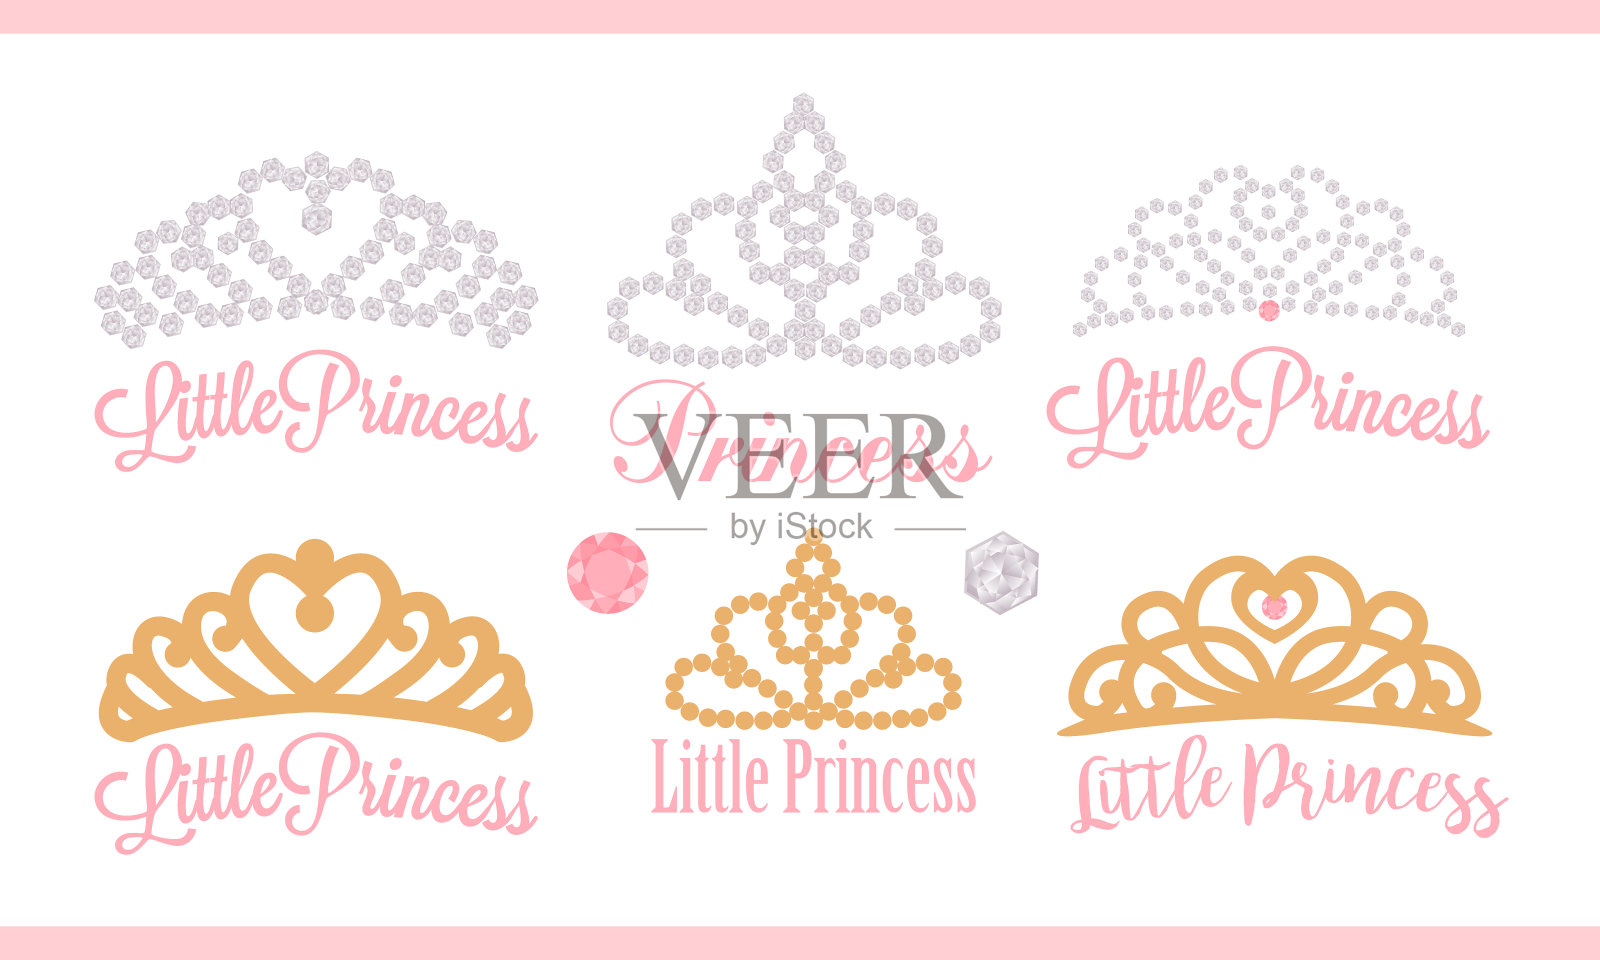 一套小冠冕。王室派对(宝宝、新娘送礼会)矢量设计元素;婚礼:生日:公主的金冠和宝石。插画图片素材